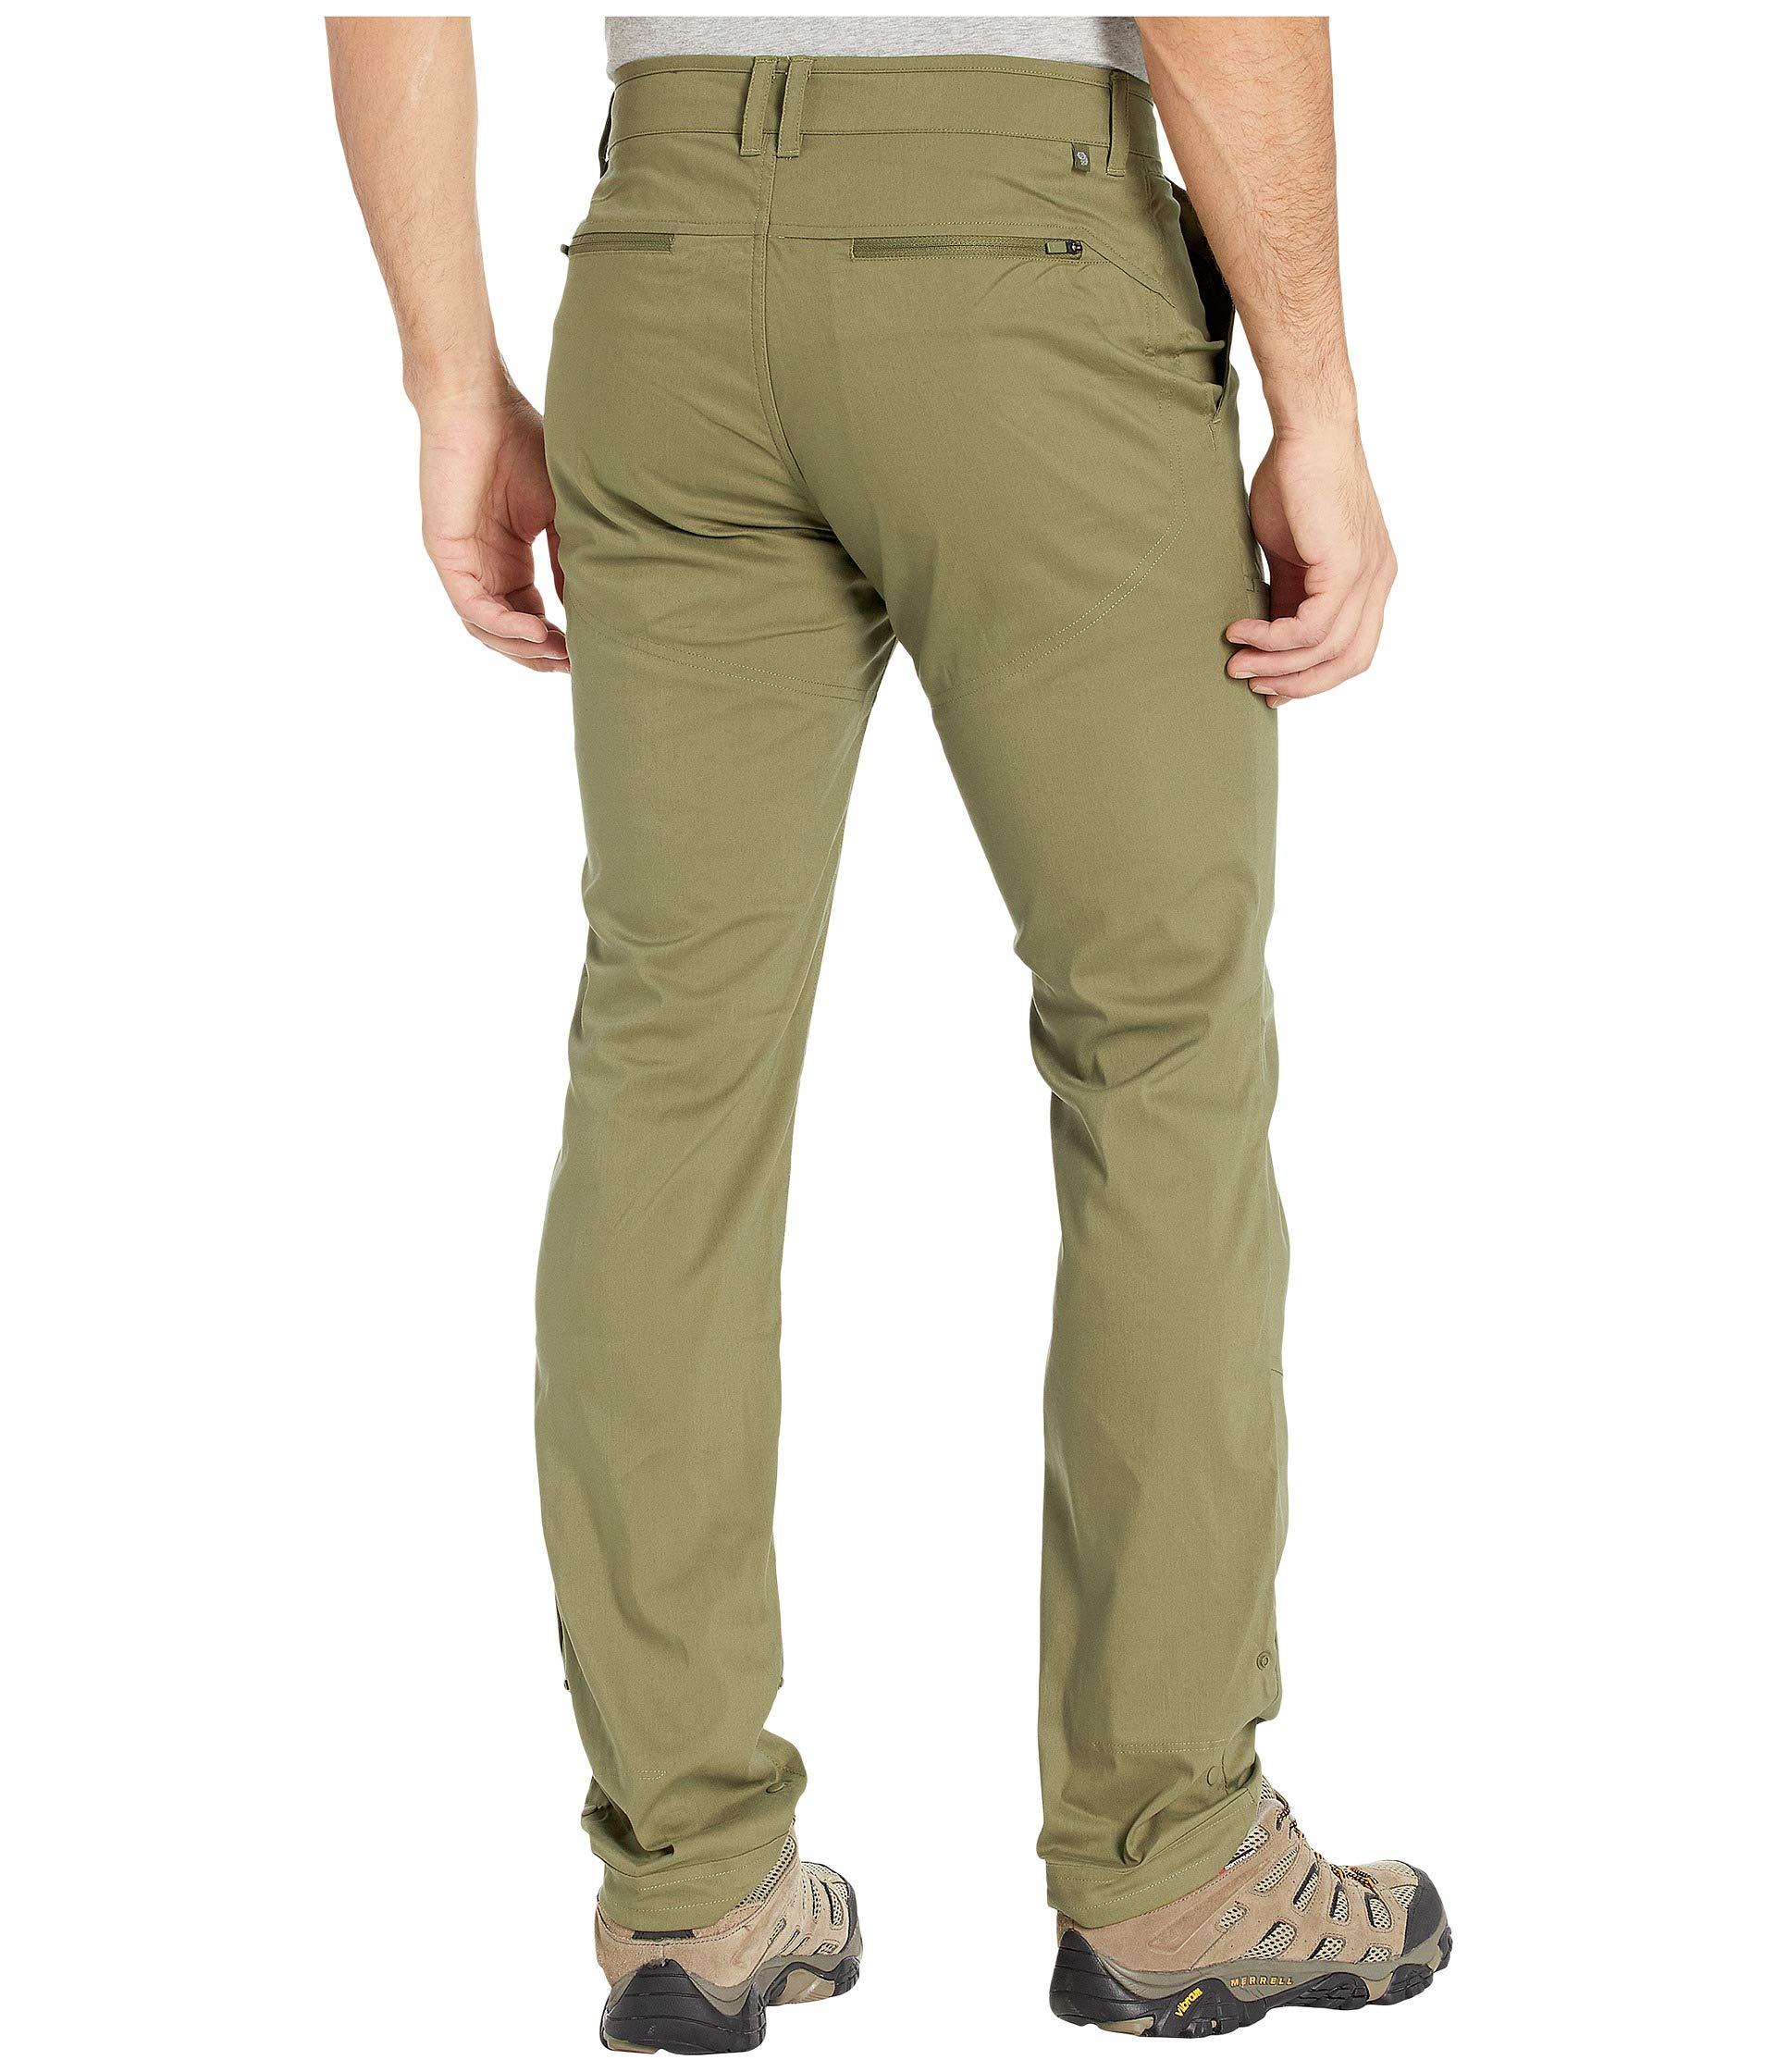 Mountain Hardwear Canvas Hardwear Aptm Pants in Green for Men - Lyst